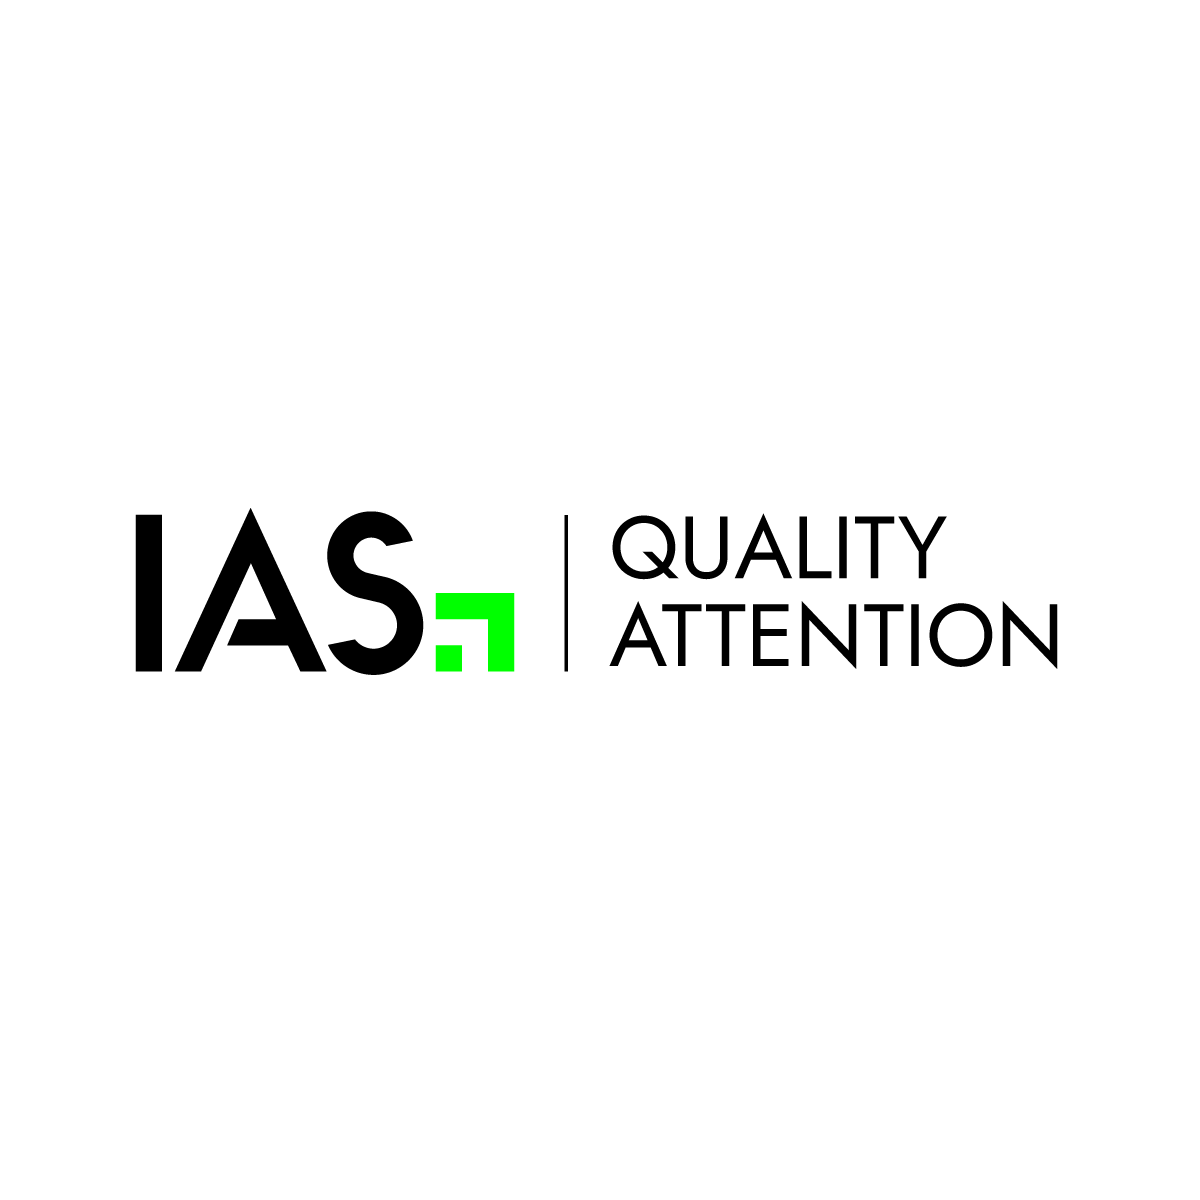 IAS annuncia il prodotto di nuova generazione per la misurazione della Quality Attention 